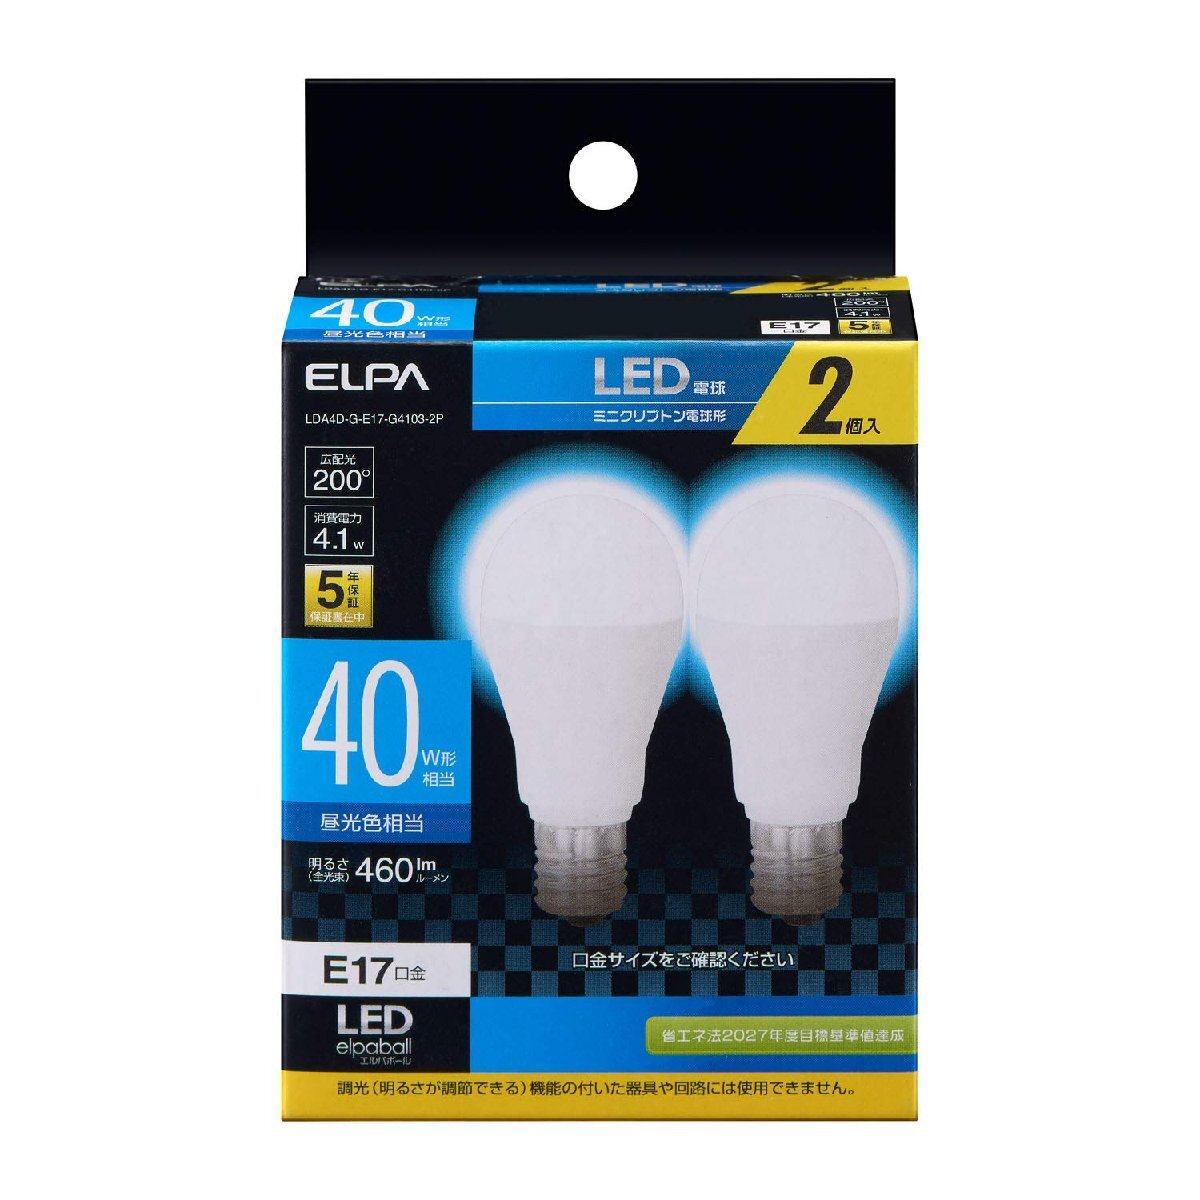 エルパ (ELPA) LED電球ミニクリプトン形 E17 昼光色相当 屋内用 2個入 LDA4D-G-E17-G4103-2P_画像1